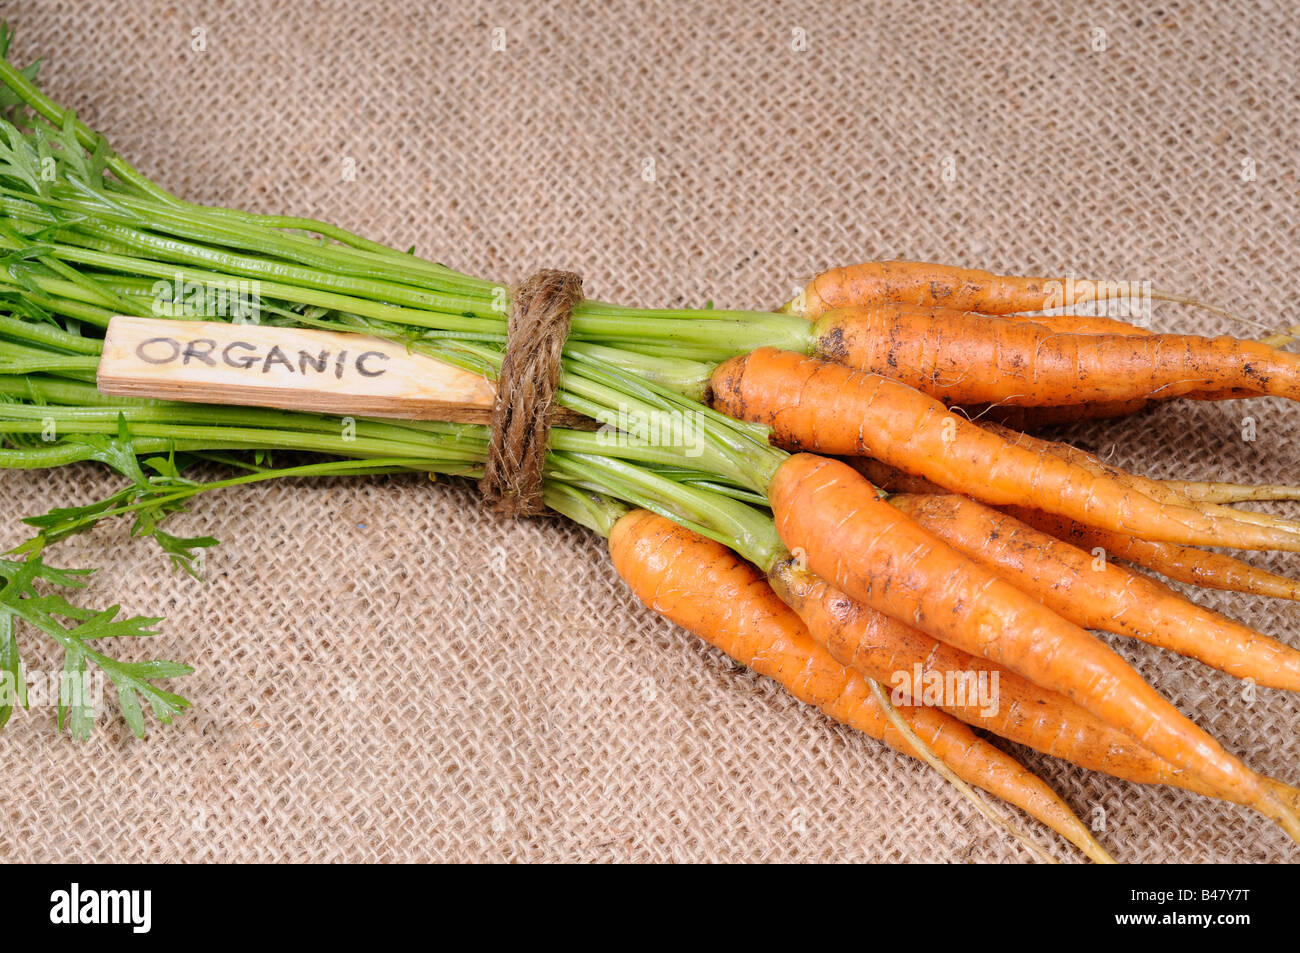 Recién elegido montón de zanahorias nanco orgánicos cultivados en casa con la etiqueta de orgánico UK Agosto Foto de stock